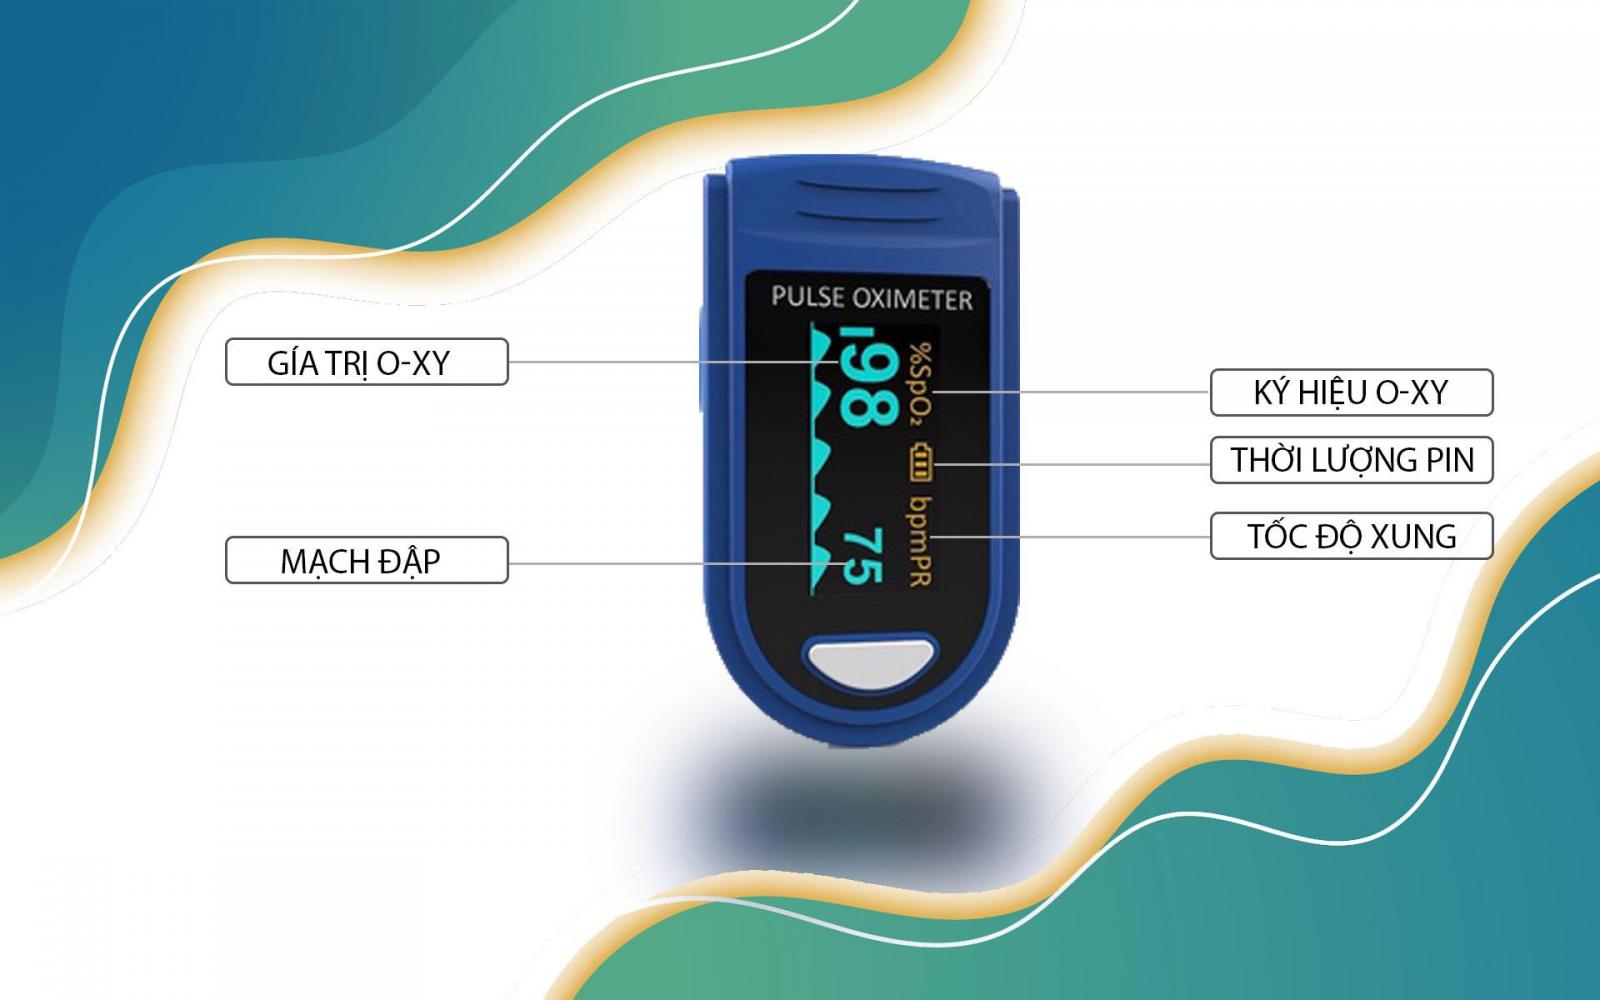 Máy đo nồng độ o-xy trong máu Jumper C500 với độ chênh lệch đo nhỏ, thông báo chính xác và nhanh chóng chỉ số o-xy cho người sử dụng.